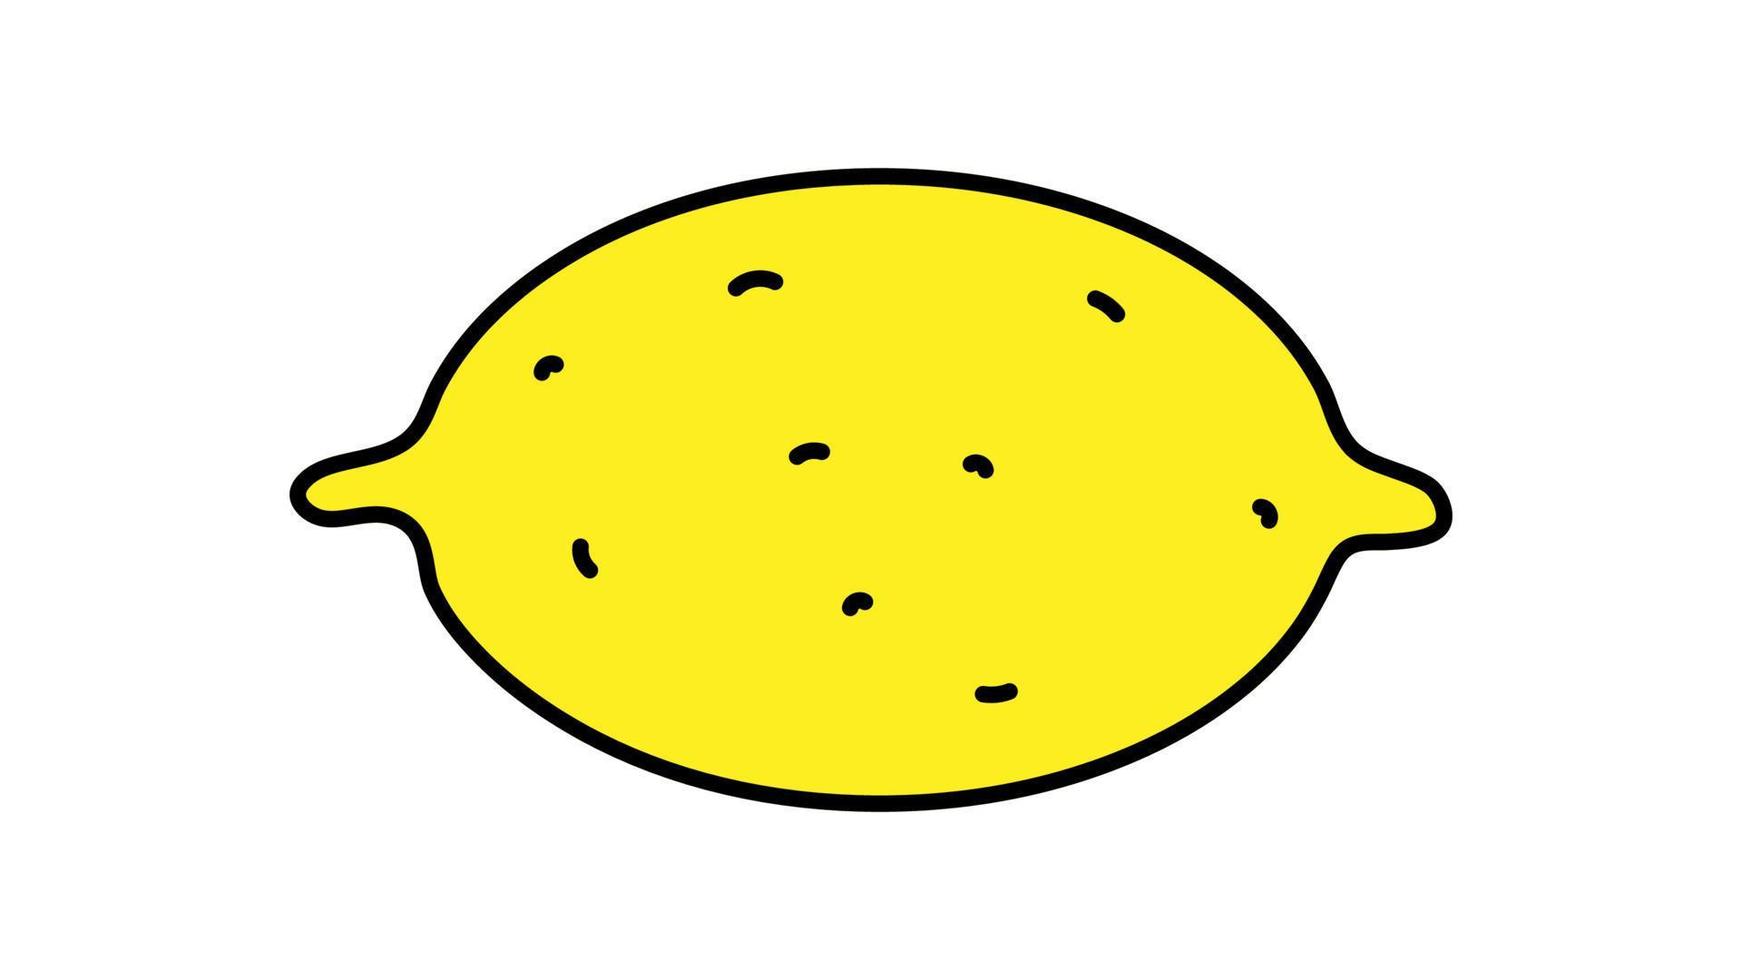 Helle, gelbe, appetitliche Zitrone auf weißem Hintergrund, Vektorillustration. eine Frucht mit einer dicken Schale. zitronenzeichnung, vitaminnahrung, vegane lebensmittel, rohkostdiät vektor